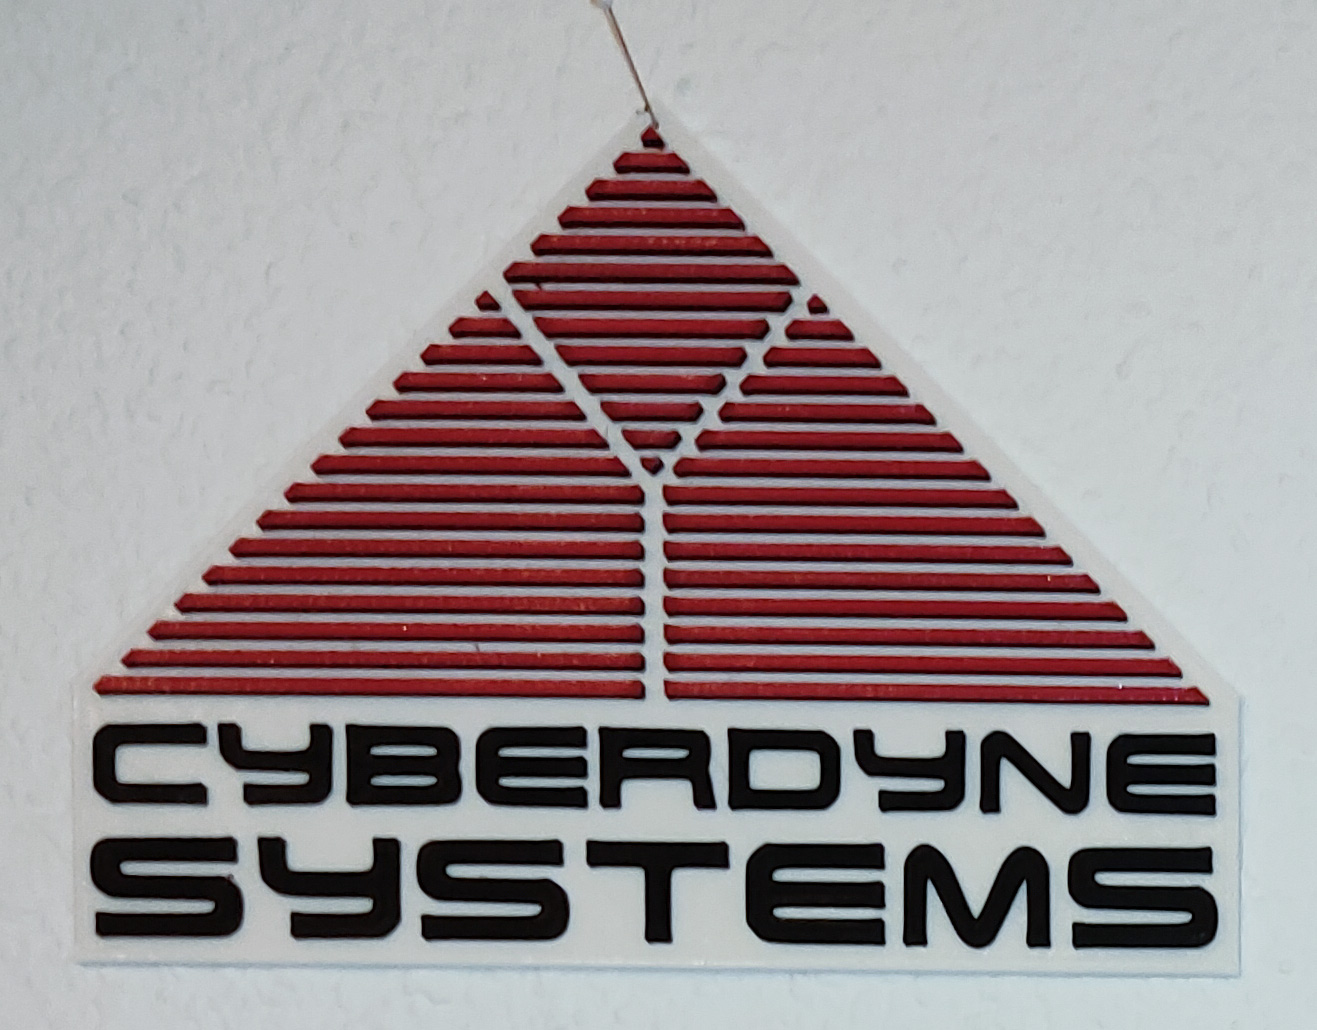 Cyberdyne Systems (Terminator) wall sign